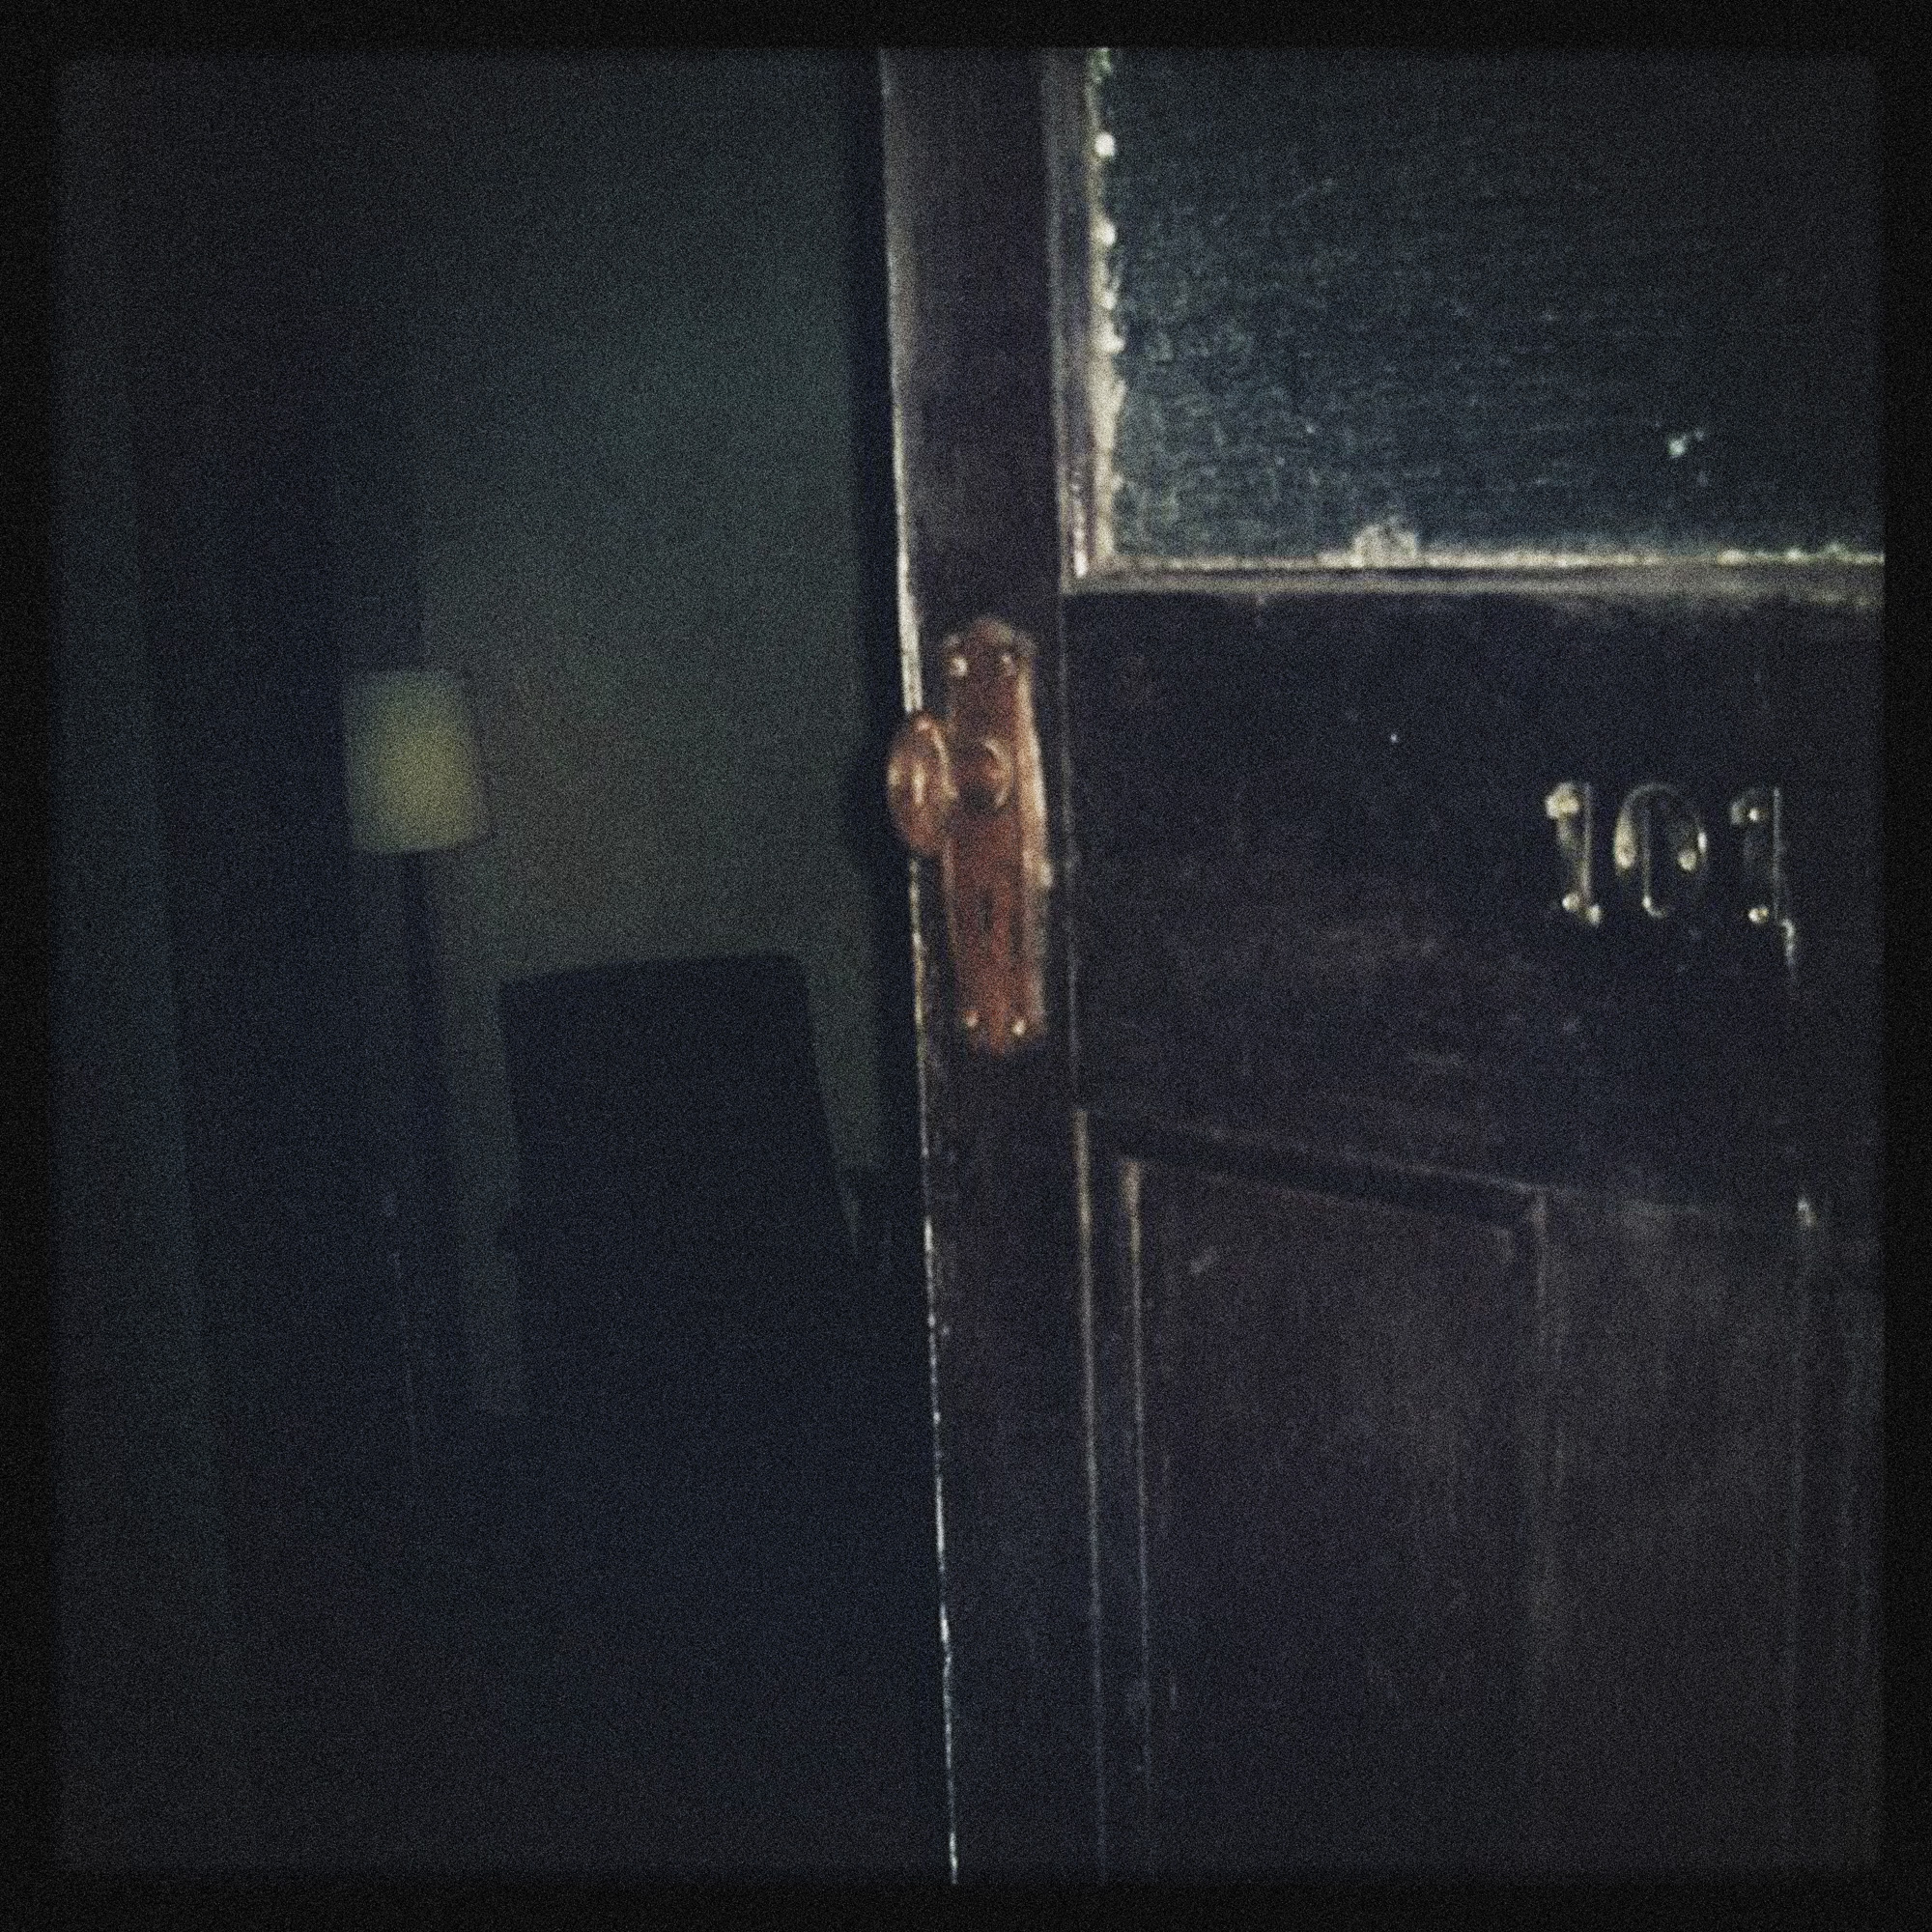 Pingyao_Room101_Door.jpg